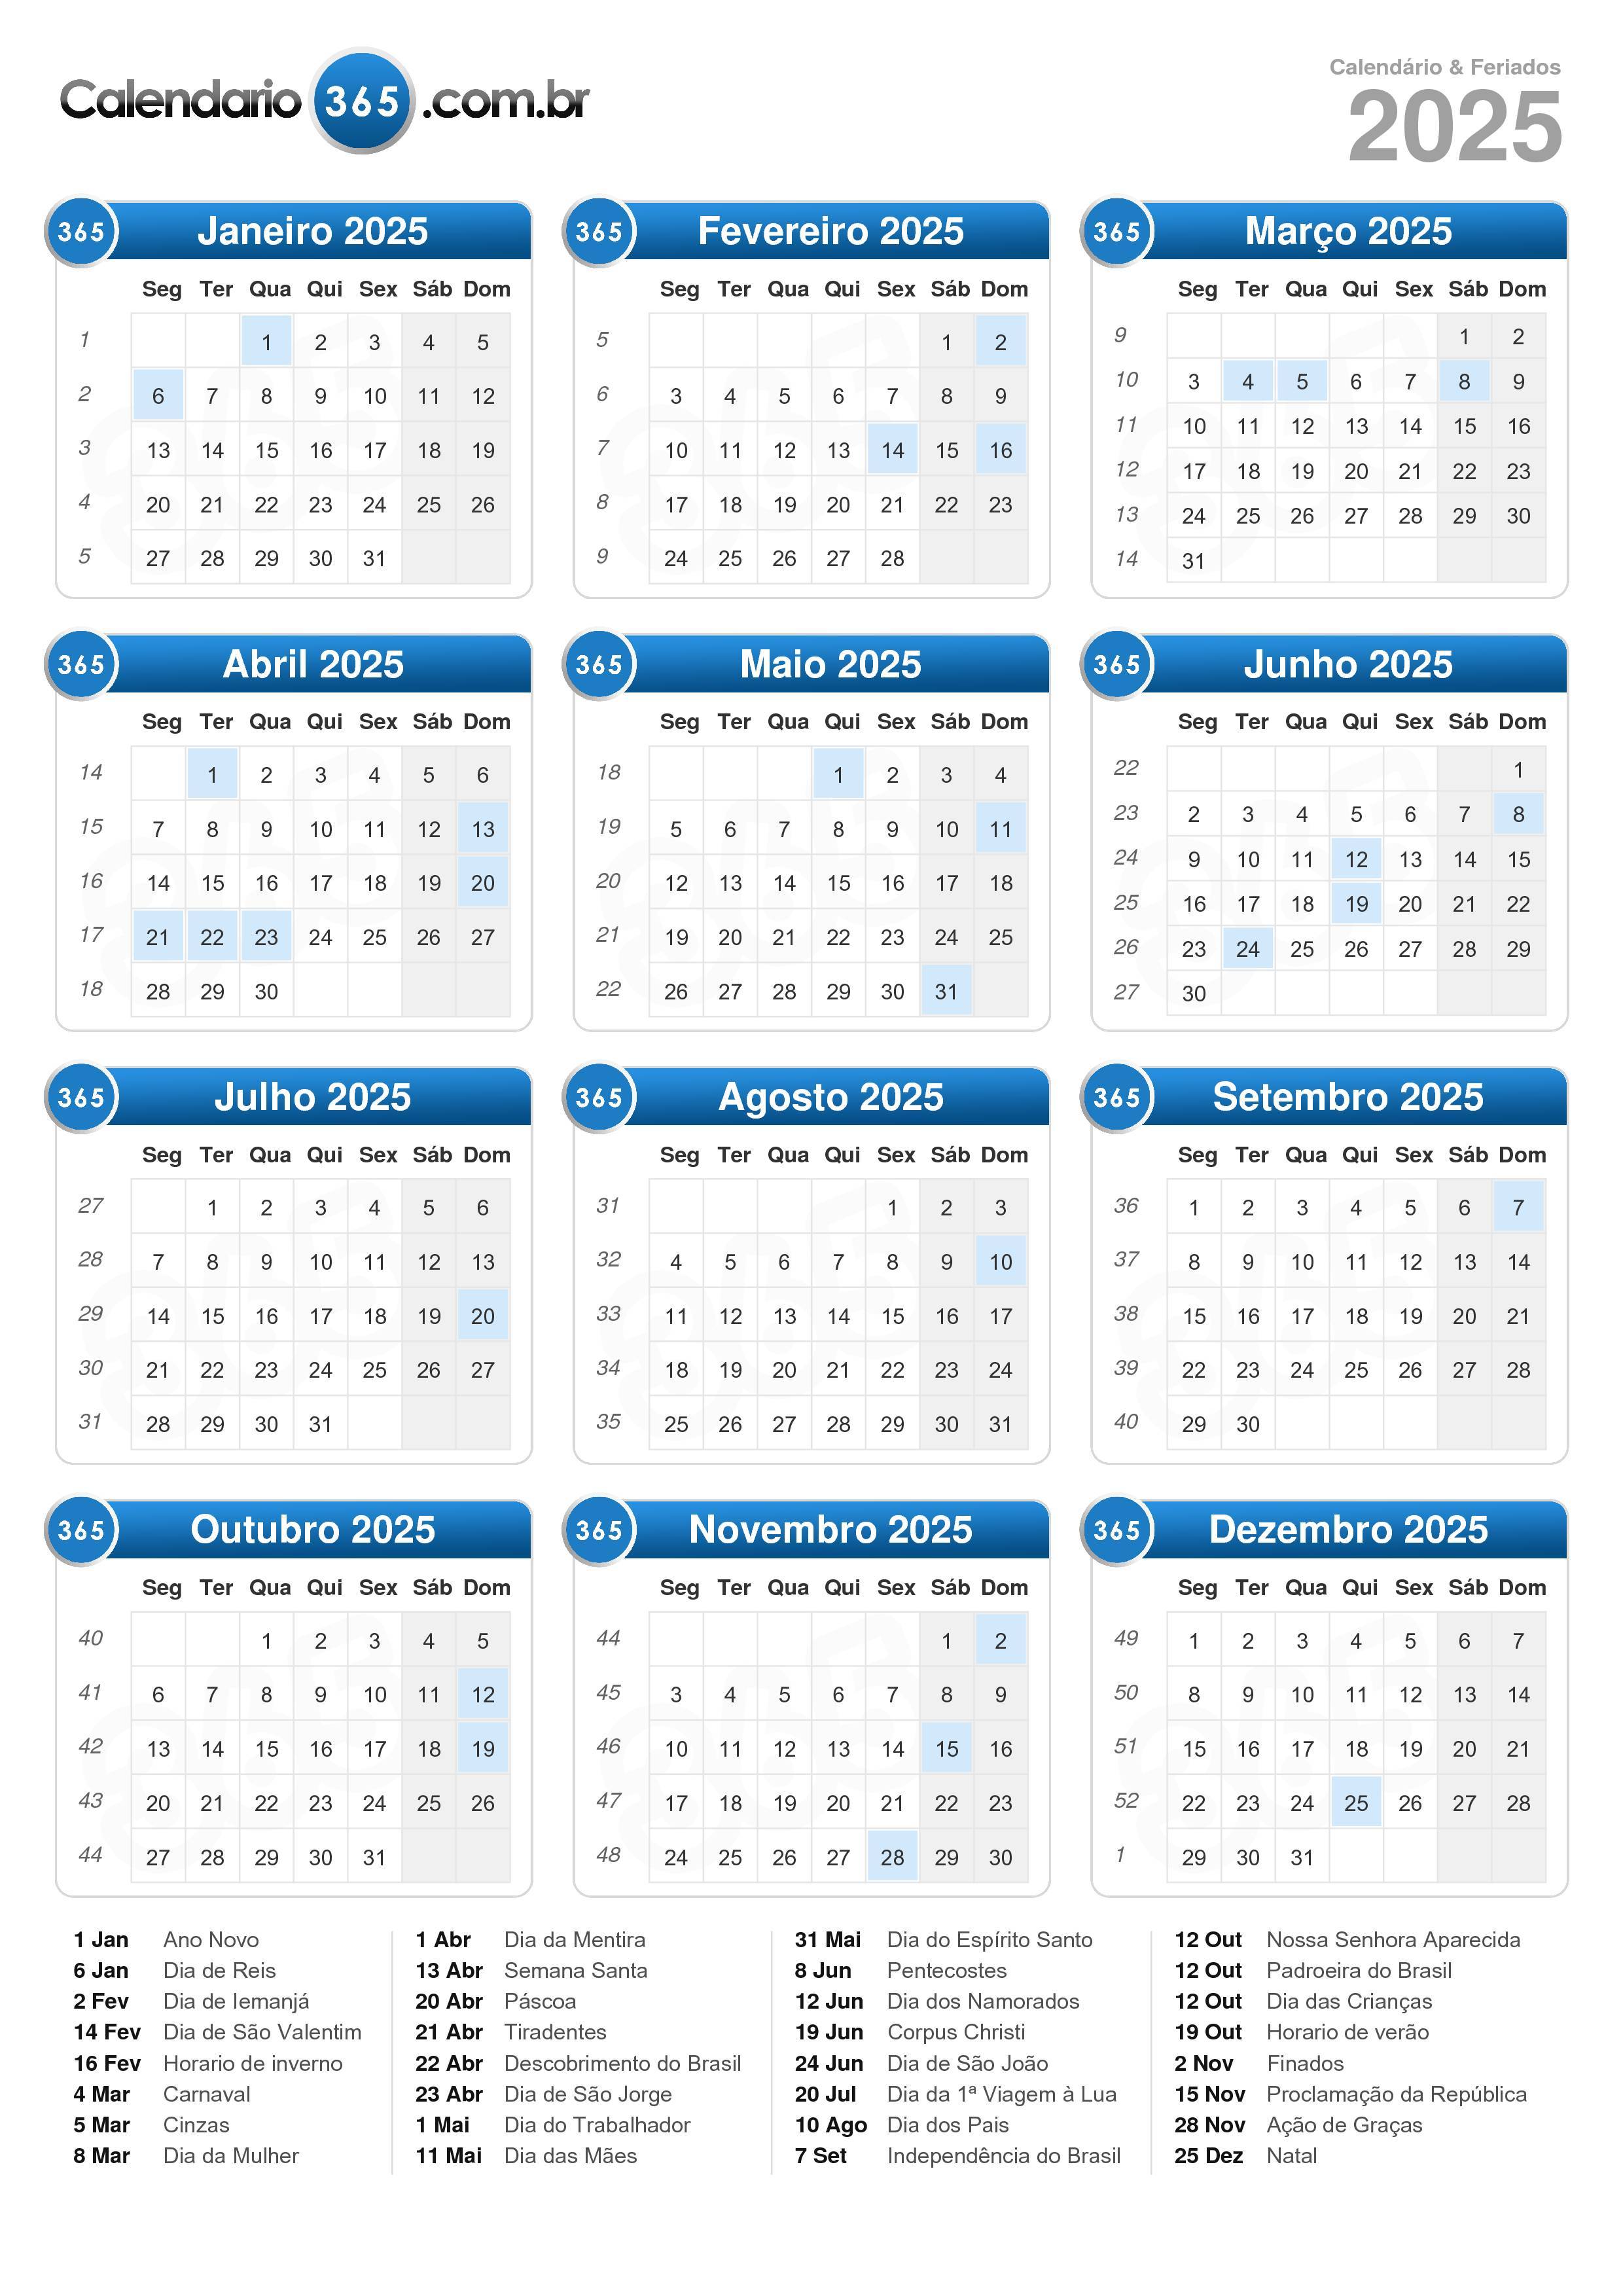 Calendario 2025 Xolos 